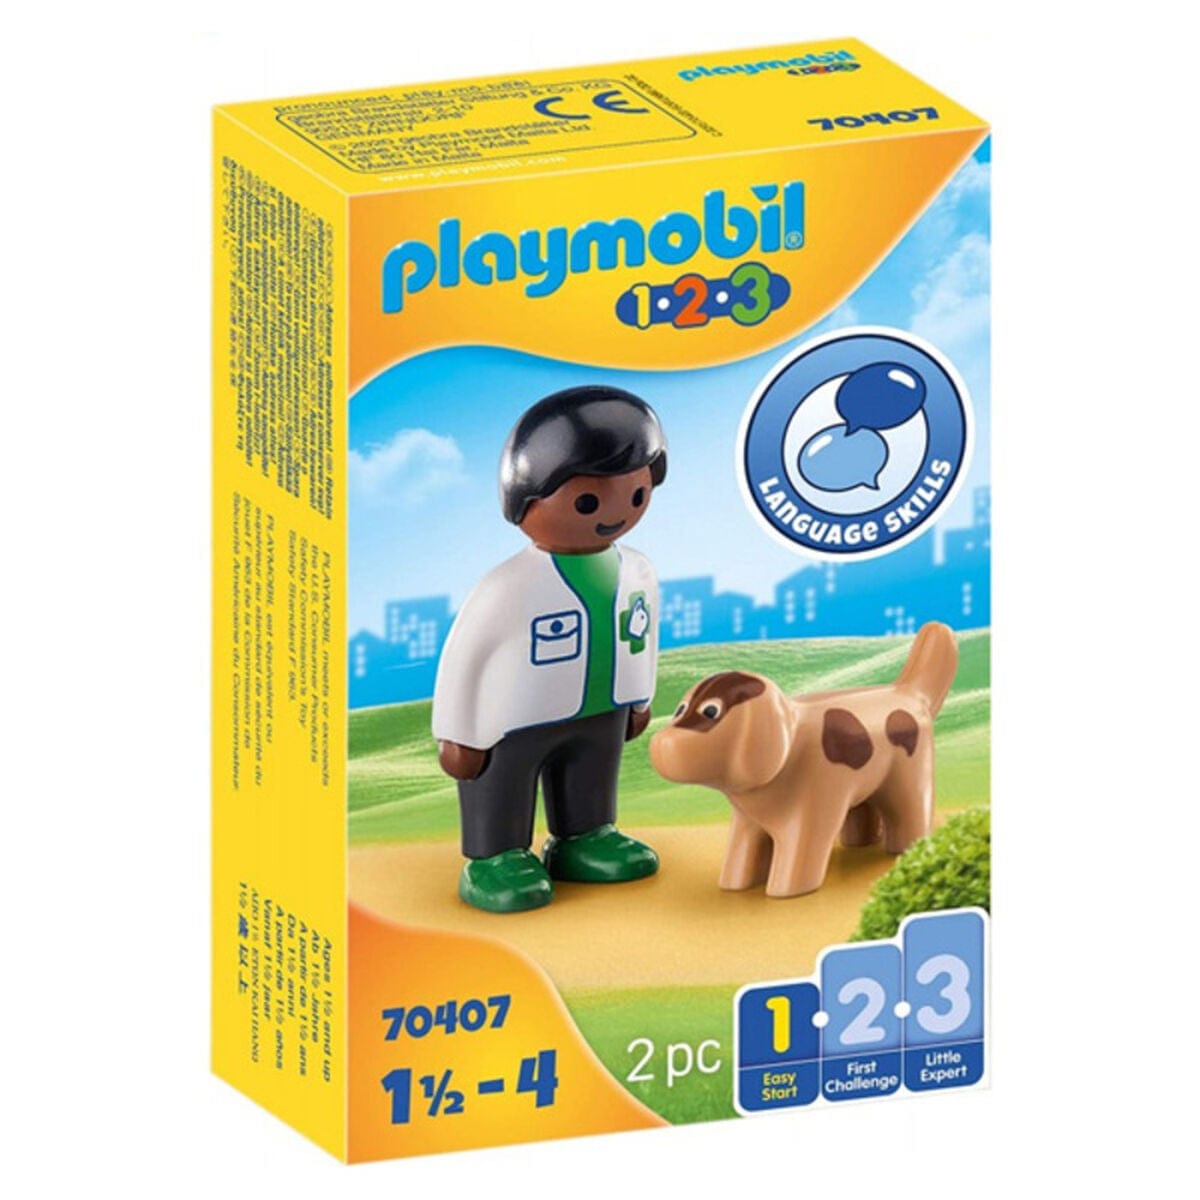 Playmobil Spielzeug | Kostüme > Spielzeug und Spiele > Weiteres spielzeug Playset 1,2,3 Veterinary with Dog Playmobil 70407 (2 pcs)